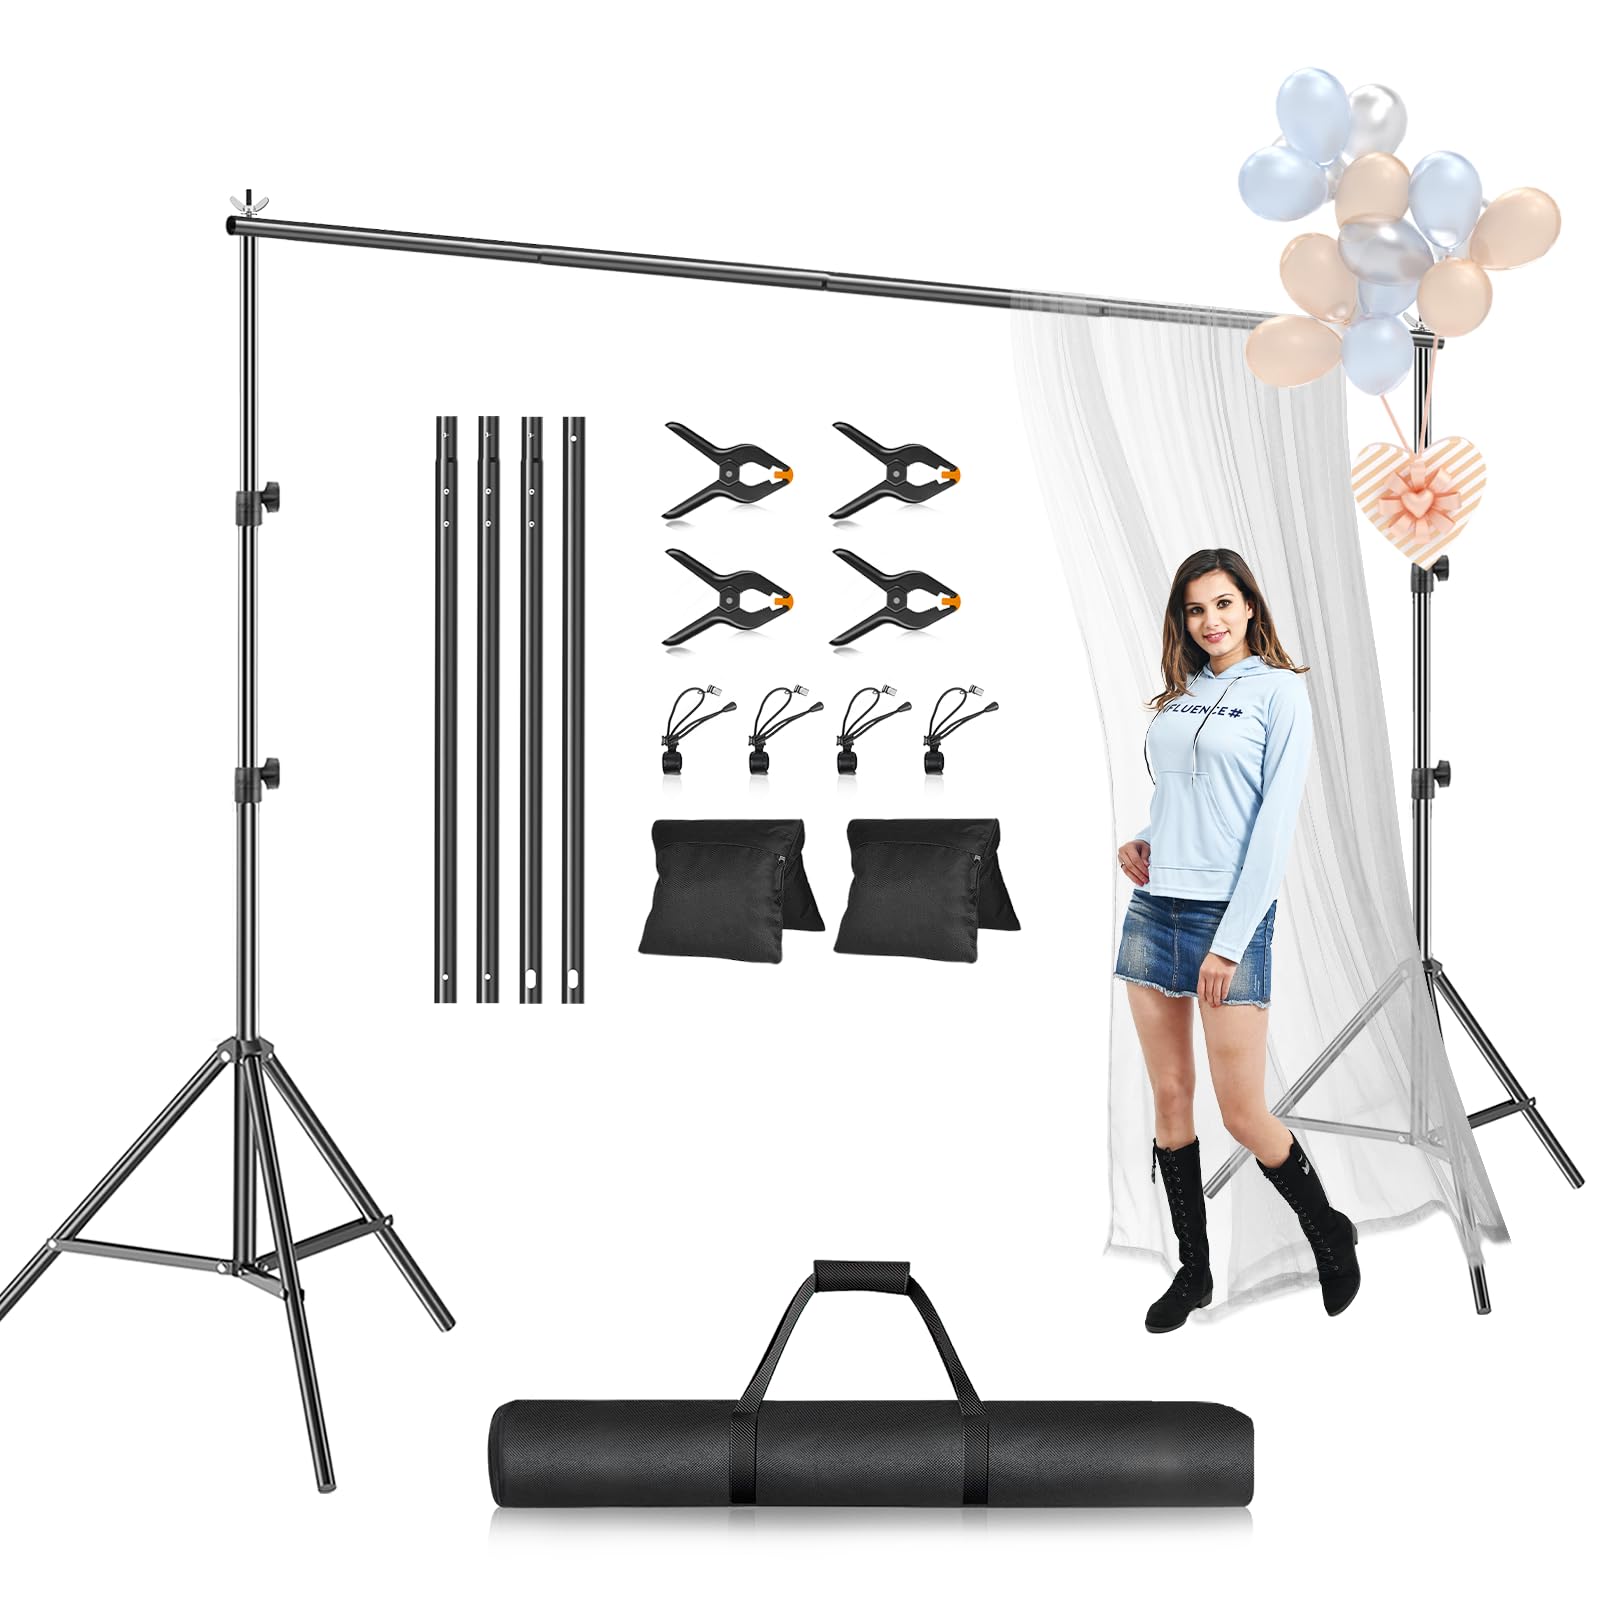 EMART Fotohintergrund-Ständer-Set, 3 x 2,4 m (H x B), verstellbarer Fotografie-Hintergrund-Ständer, Stützsystem für Videostudio, Fotokabine, Hintergrundhalter, Rahmenständer